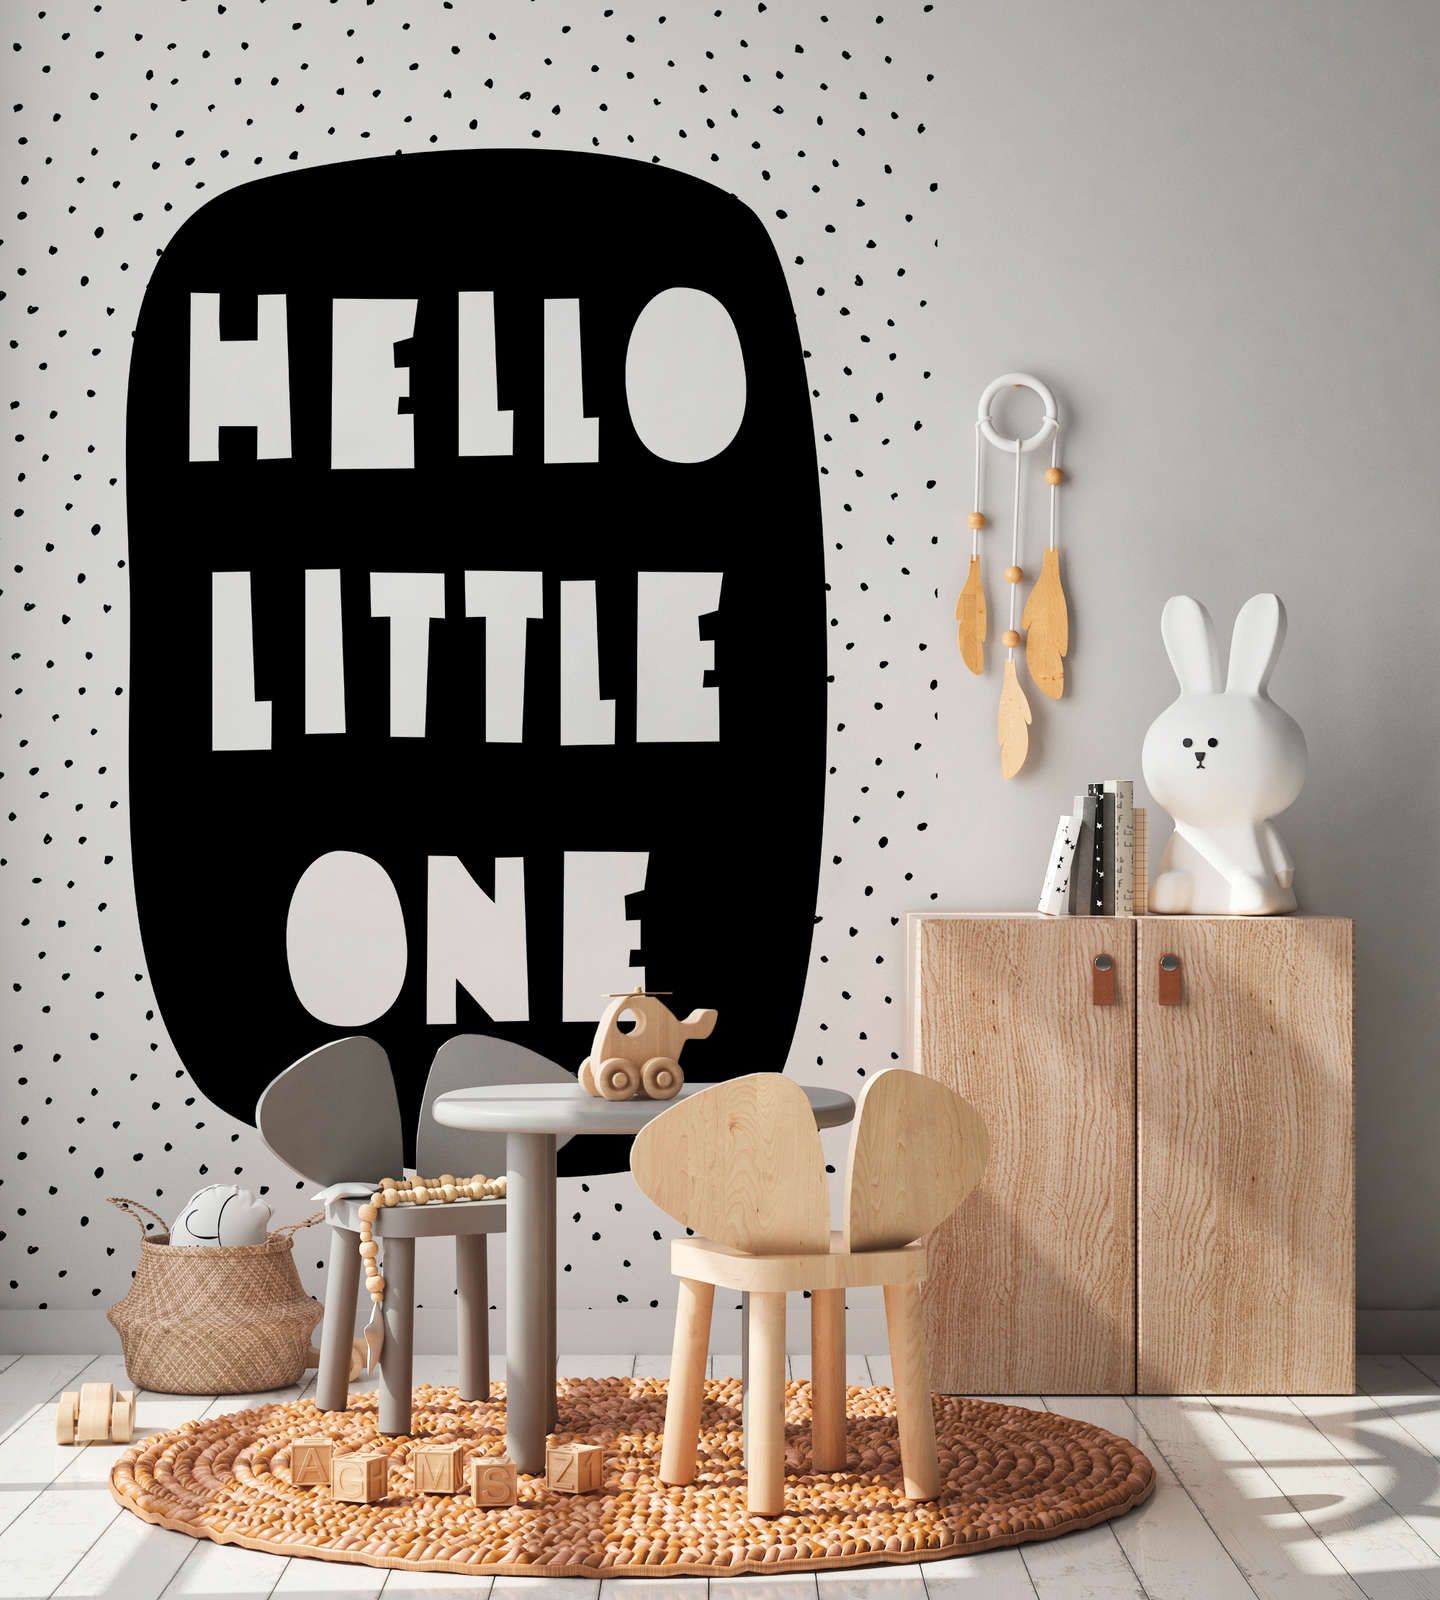             Fotomural para habitación infantil con inscripción "Hello Little One" - Material sin tejer liso y ligeramente brillante
        